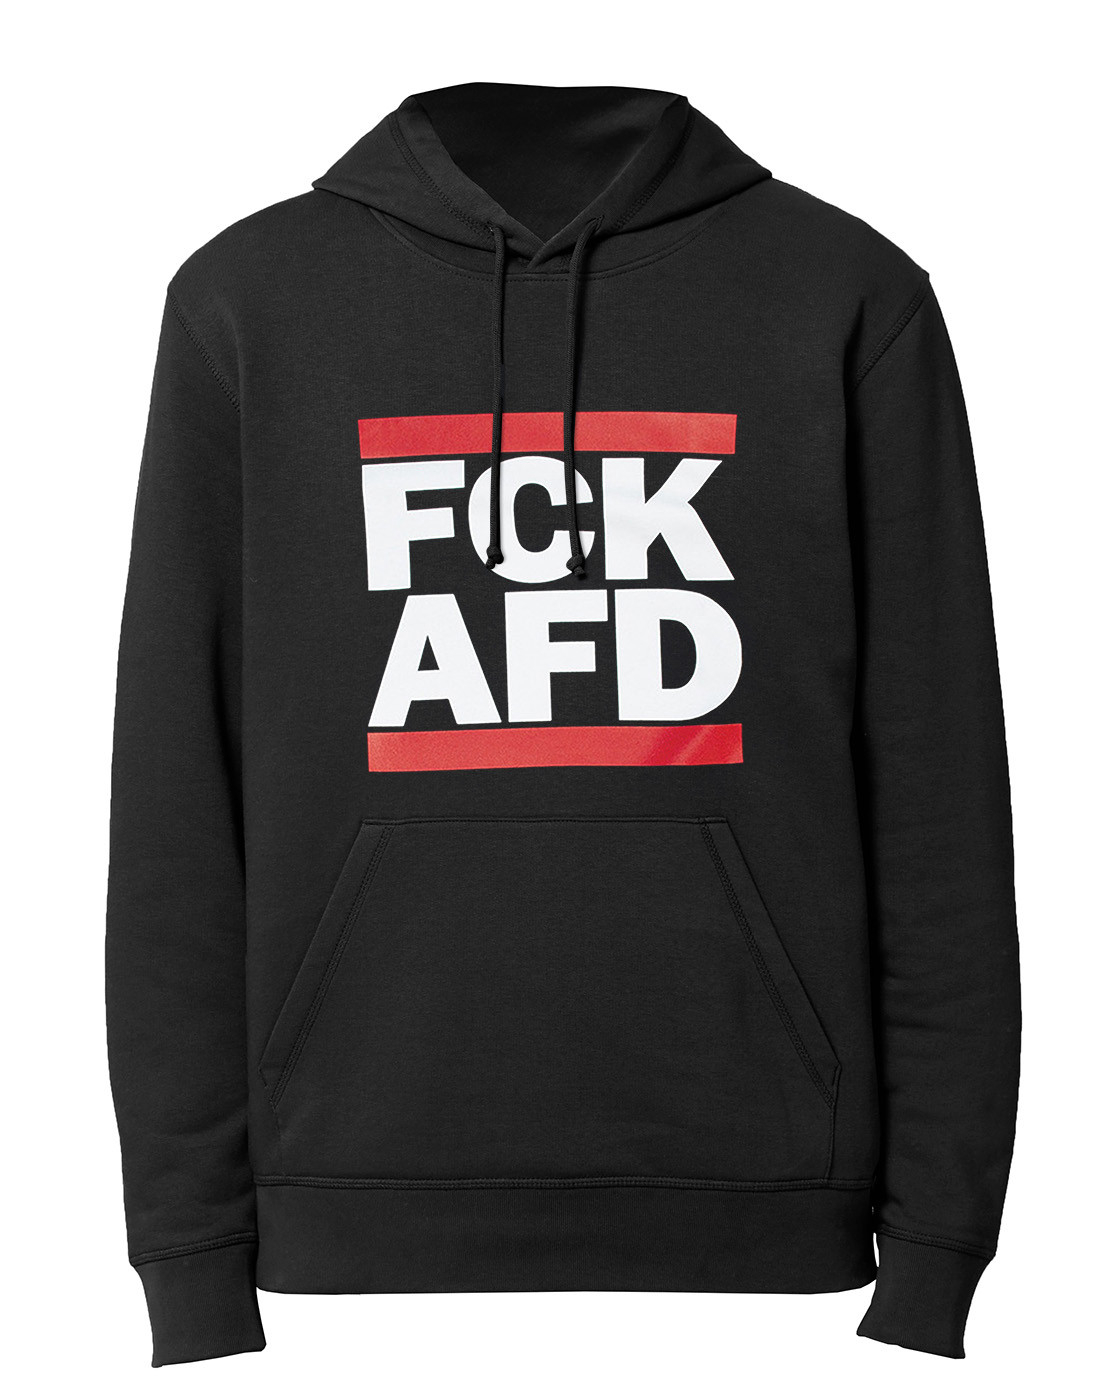 Buy FCK AFD - No Borders - Hoodie - Black